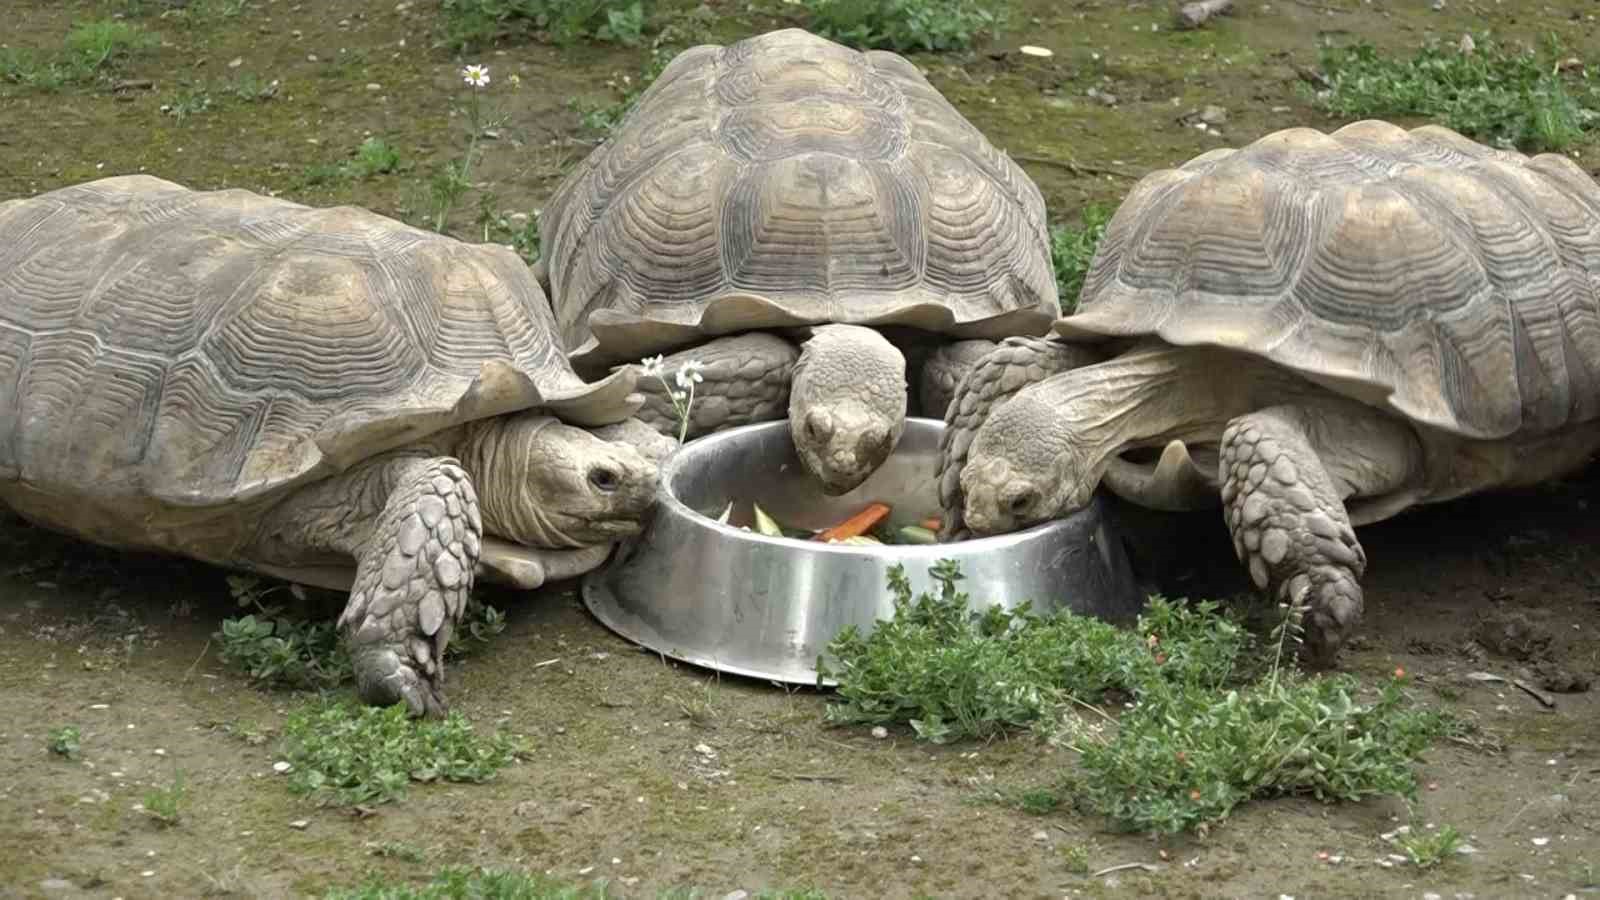 Zoopark’taki kaplumbağalara Dünya Kaplumbağa Günü’nde ziyafet